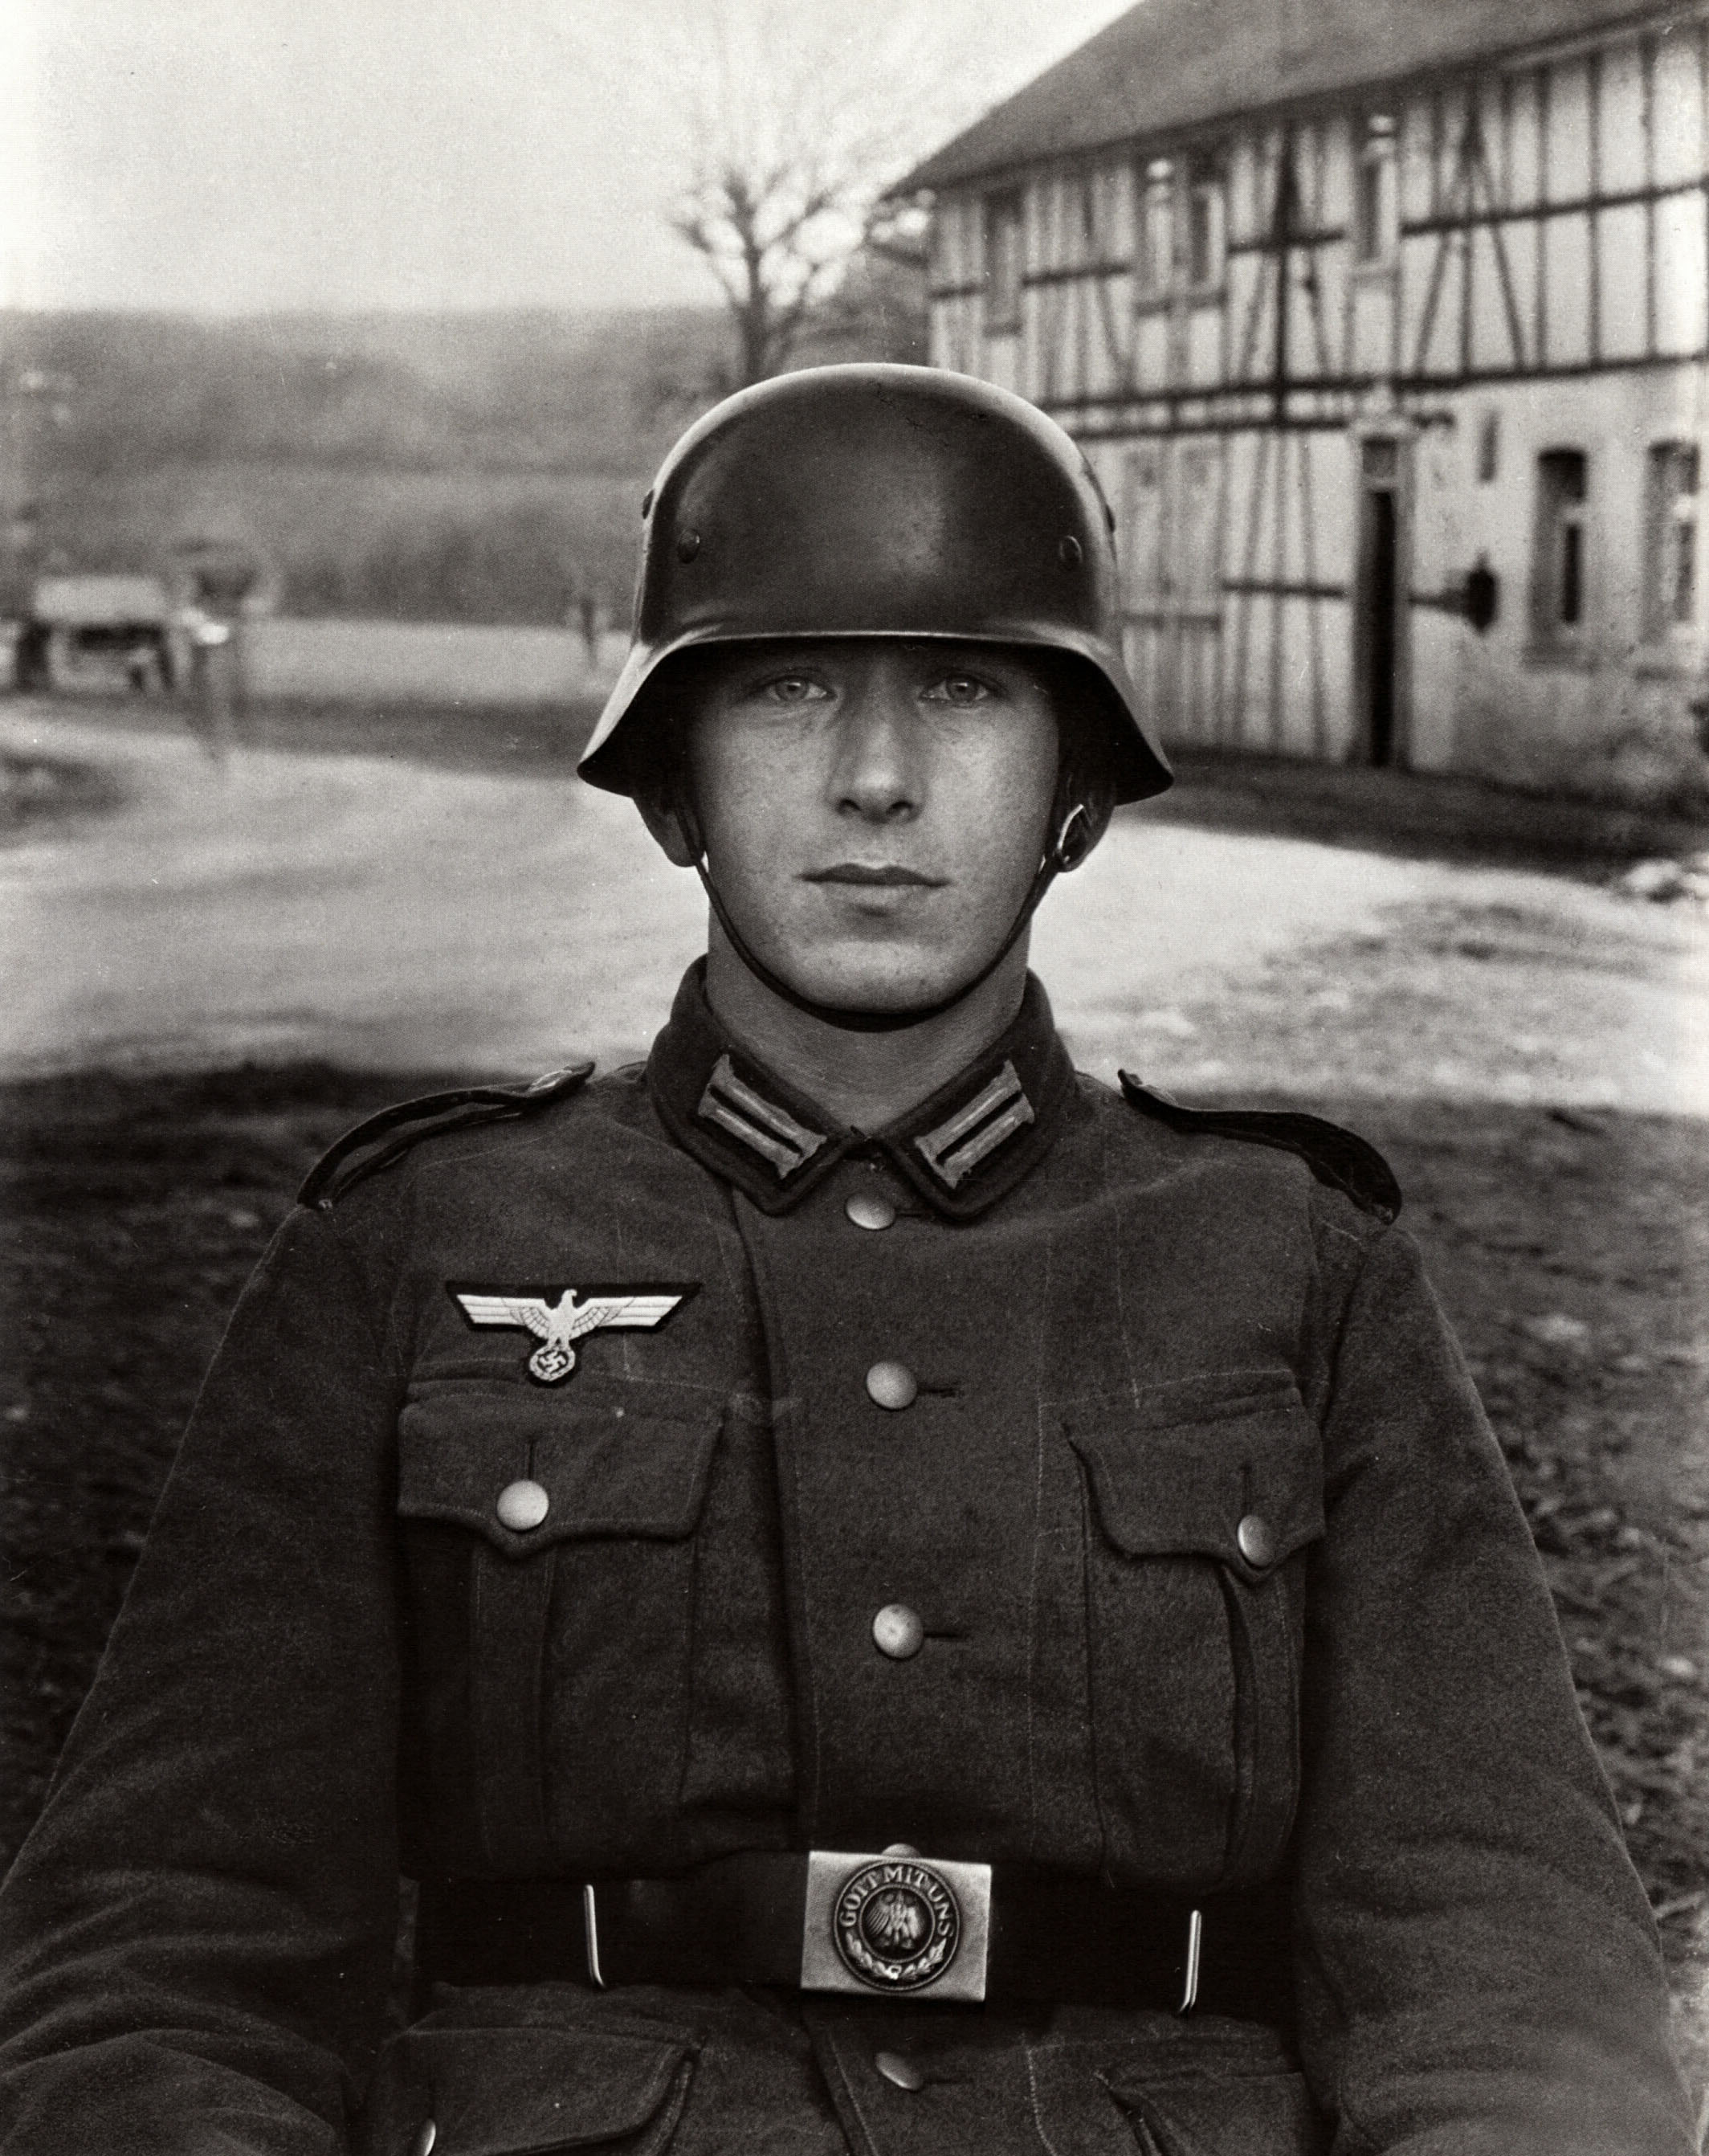 Немецкий солдат. Солдат Германии второй мировой СС. Солдат СС И солдат вермахта. Немецкий солдат вермахта. СС 1940.